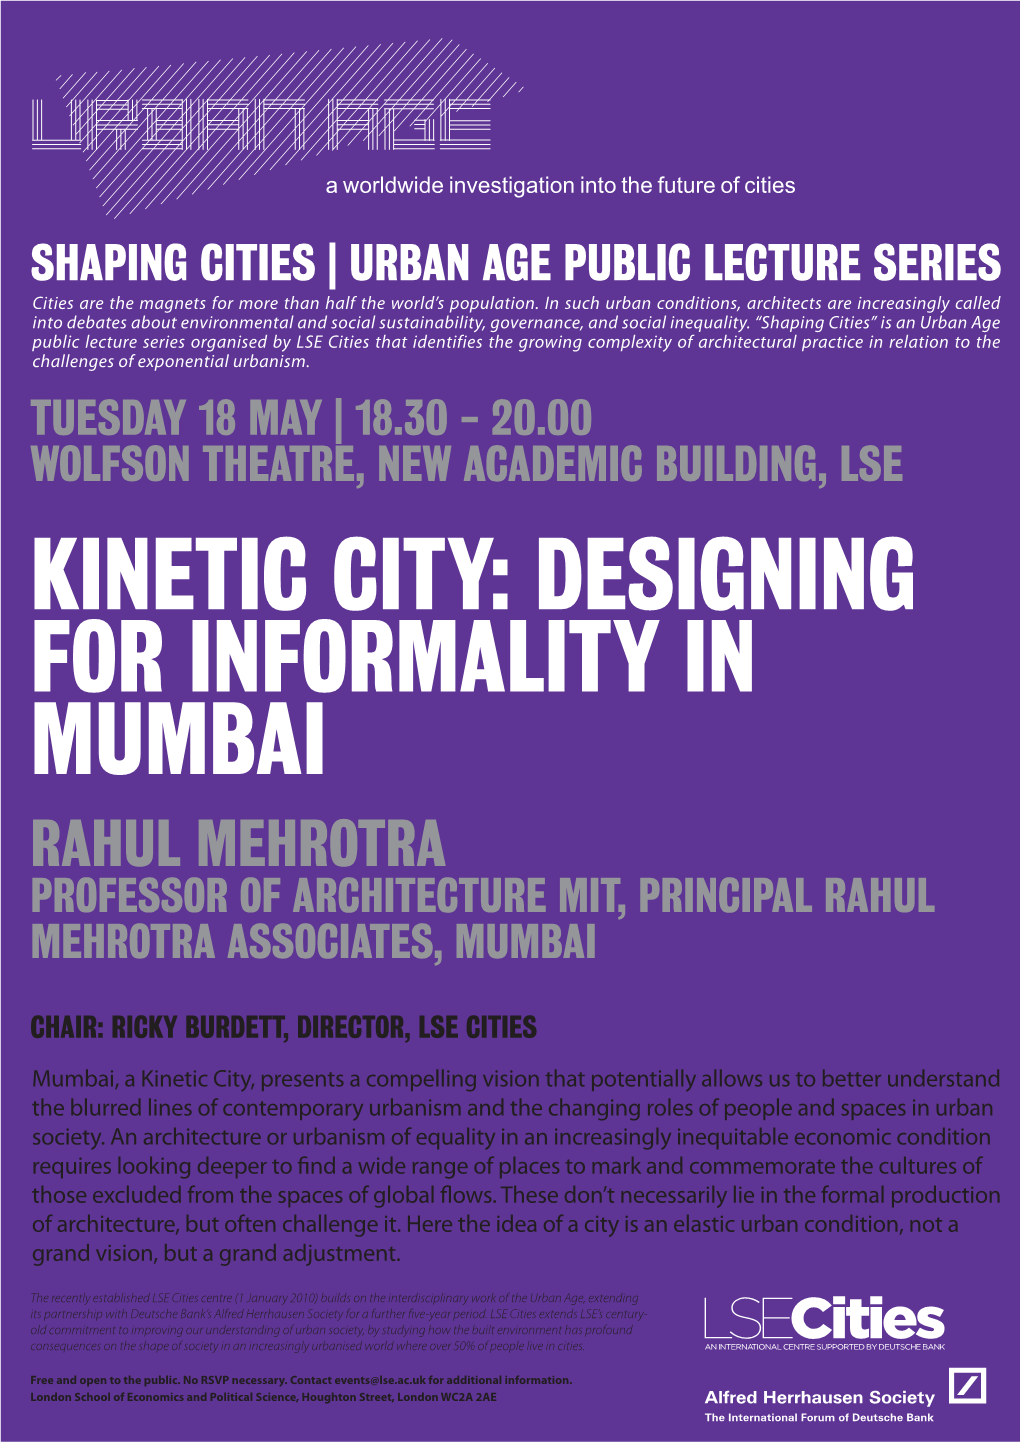 Rahul Mehrotra Professor of Architecture MIT, Principal Rahul Mehrotra Associates, Mumbai